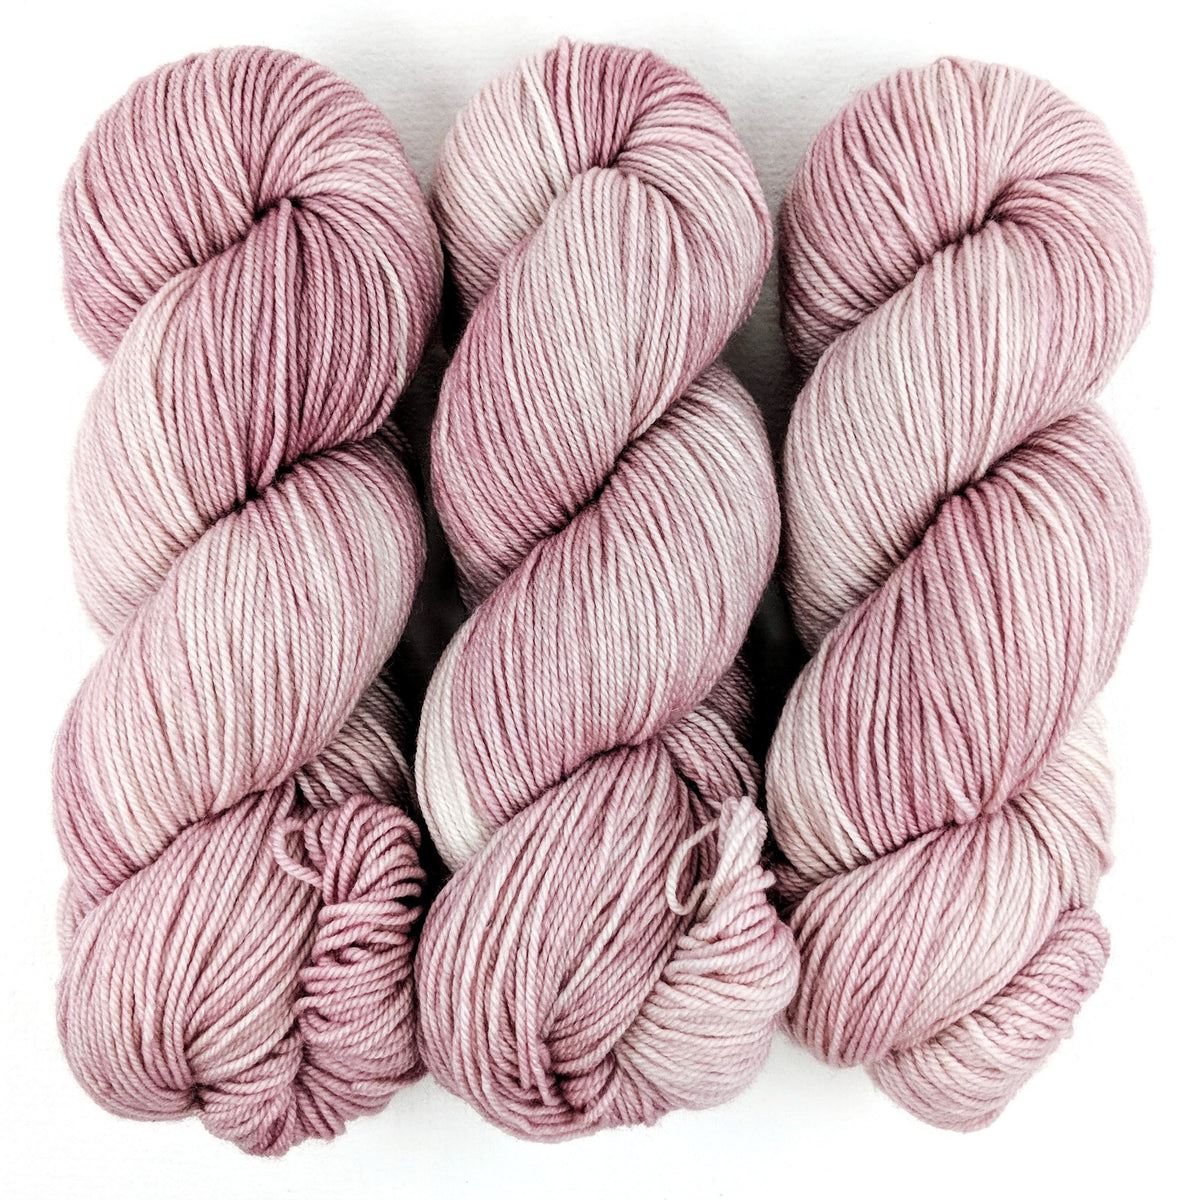 Apple Blossom - Nettle Soft DK - Dyed Stock